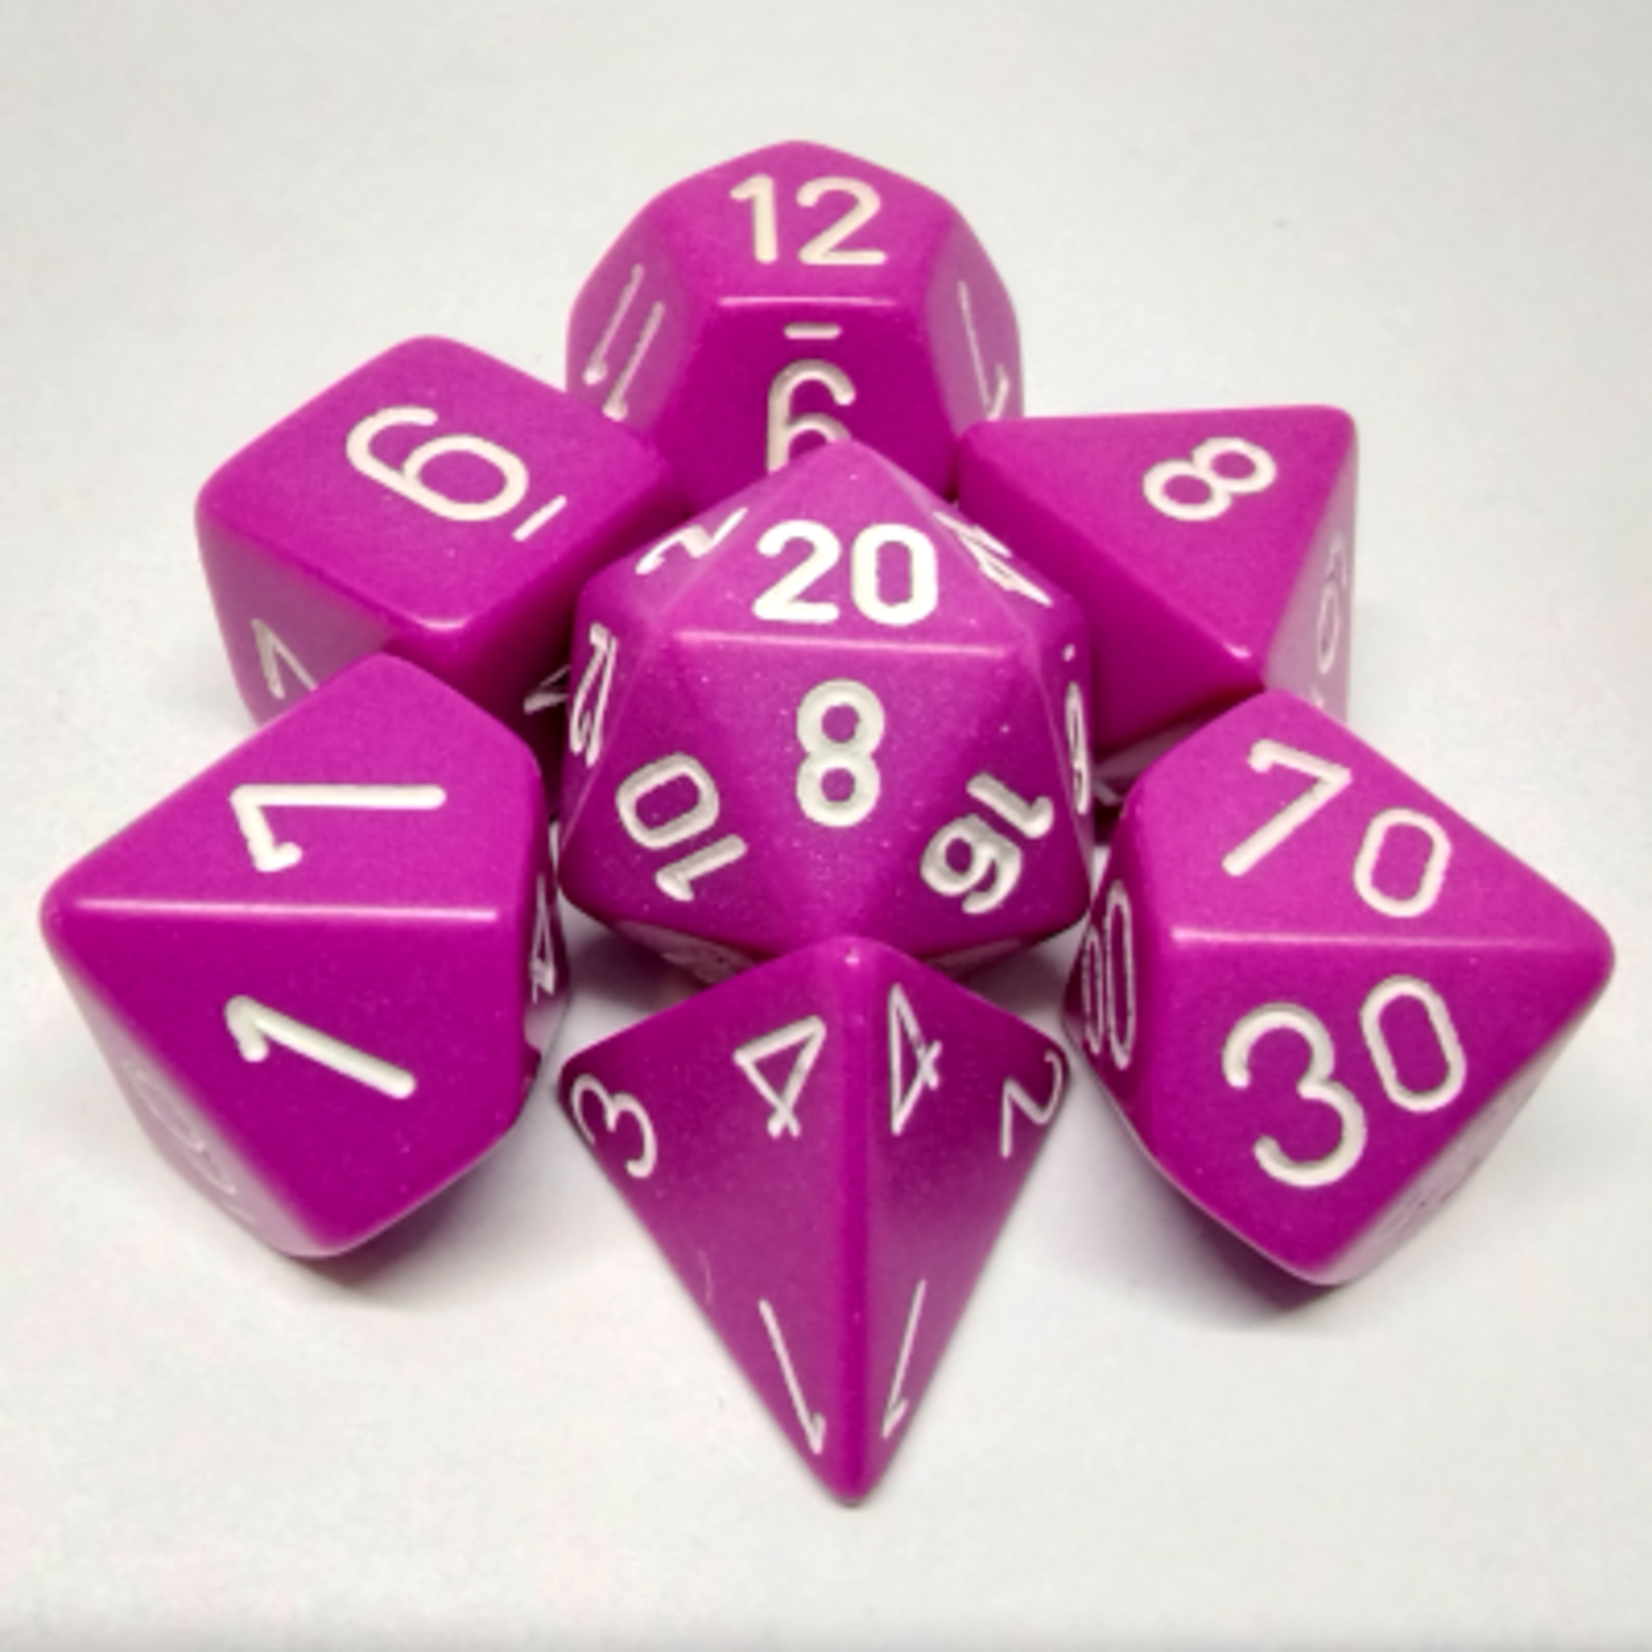 Chessex Ensemble de 7 dés polyédriques opaque violet pâle avec chiffres blancs